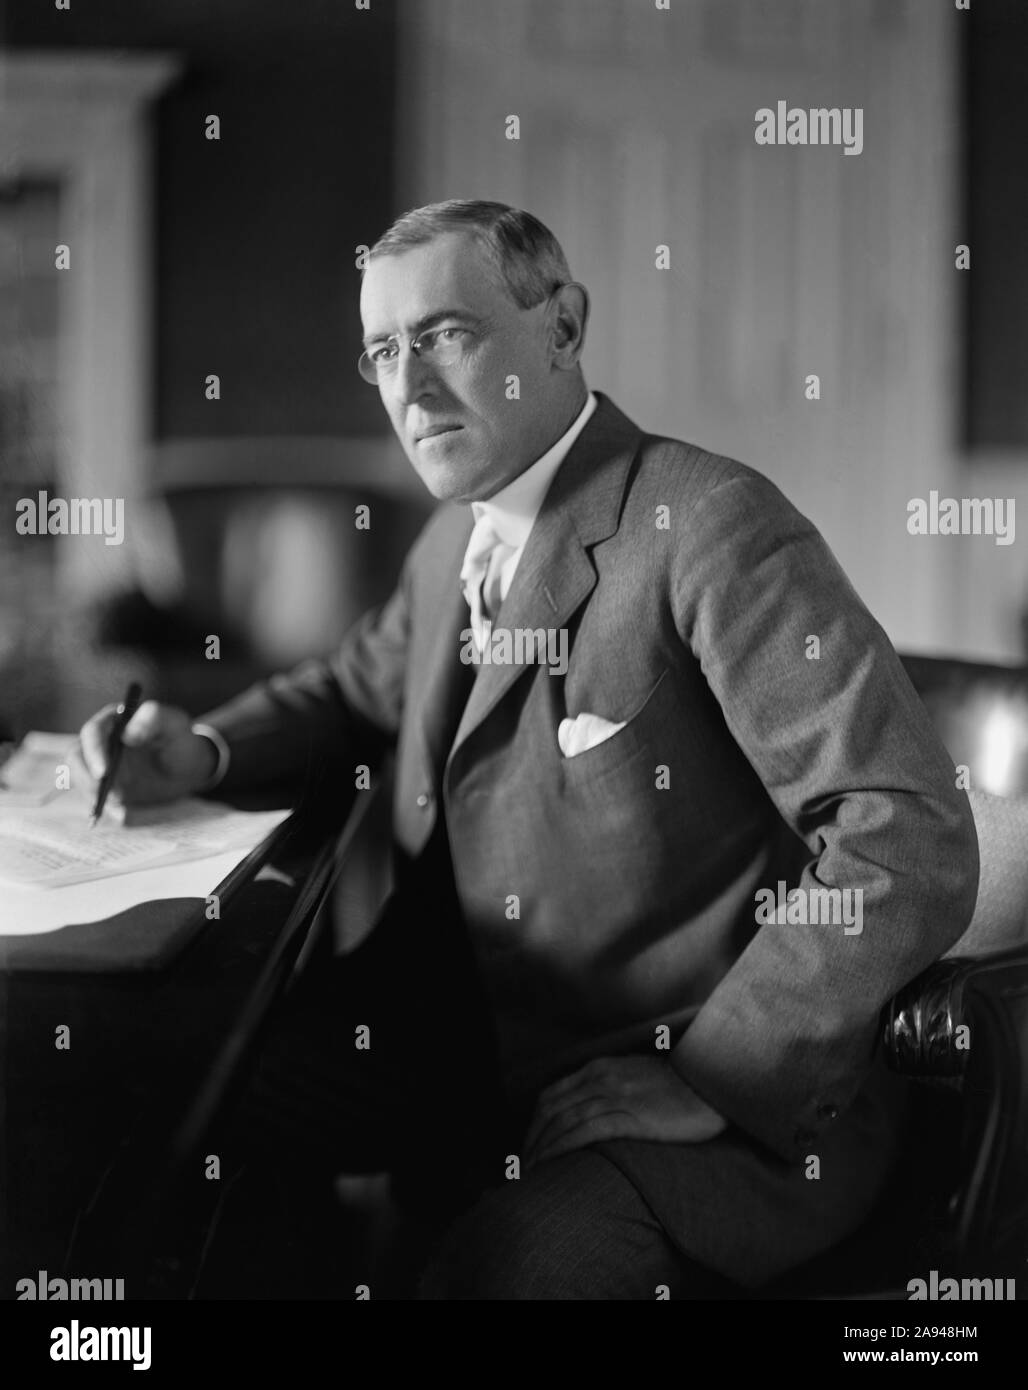 Us-Präsident Woodrow Wilson sitzt am Schreibtisch im Oval Office des Weißen Hauses während seiner ersten Amtszeit, Washington, D.C., USA, Harris & Ewing, zwischen 1913 und 1916 Stockfoto